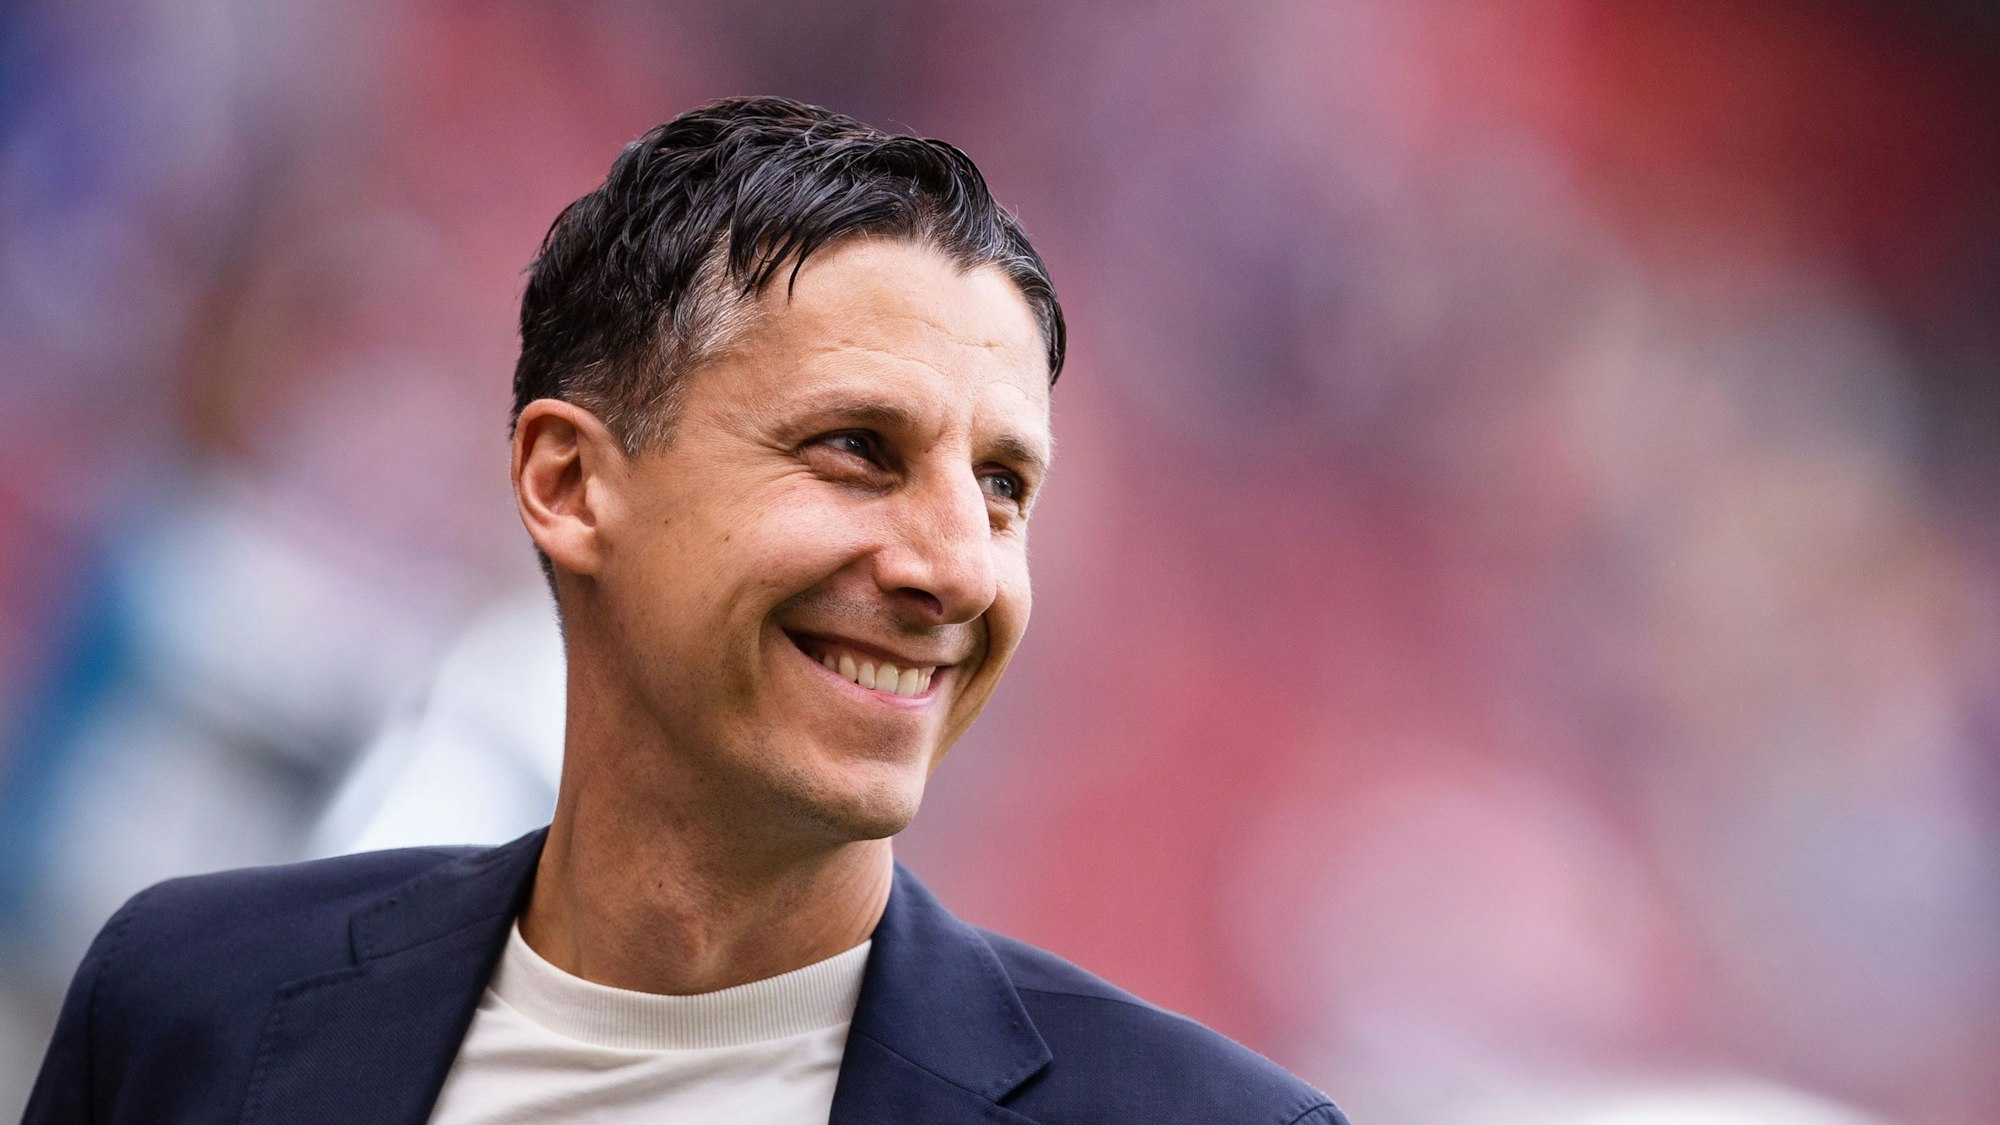 Christian Keller (44) ist seit dem 1. April 2022 Sport-Geschäftsführer des 1. FC Köln.